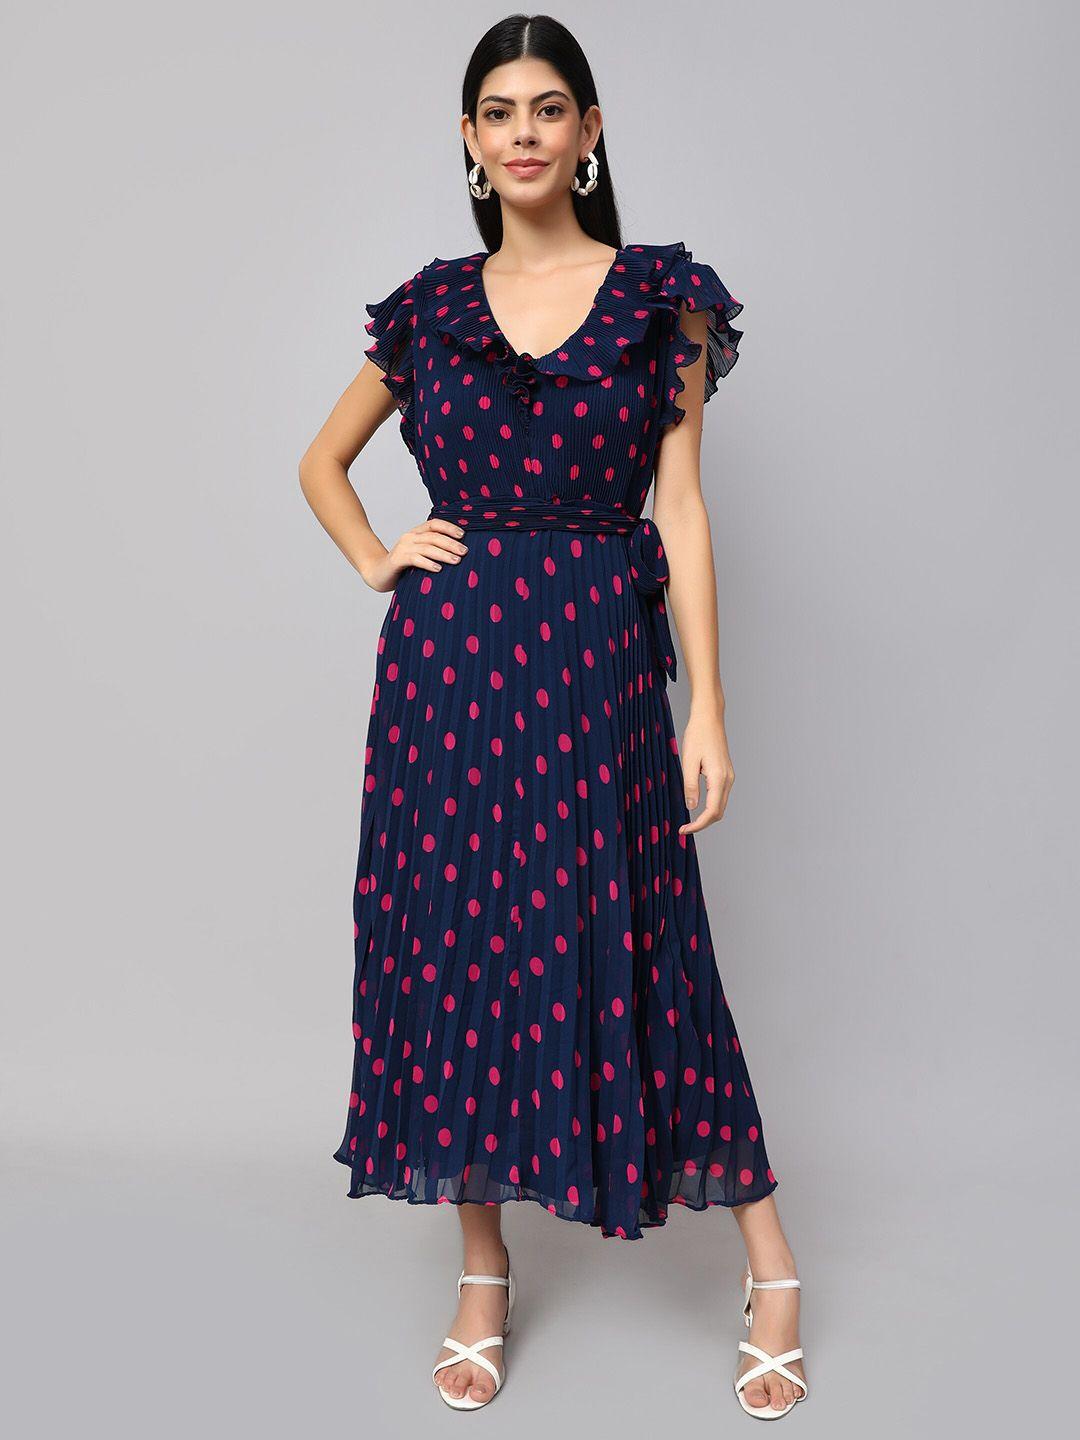 amagyaa polka dot printed v-neck flutter sleeves a-line dress